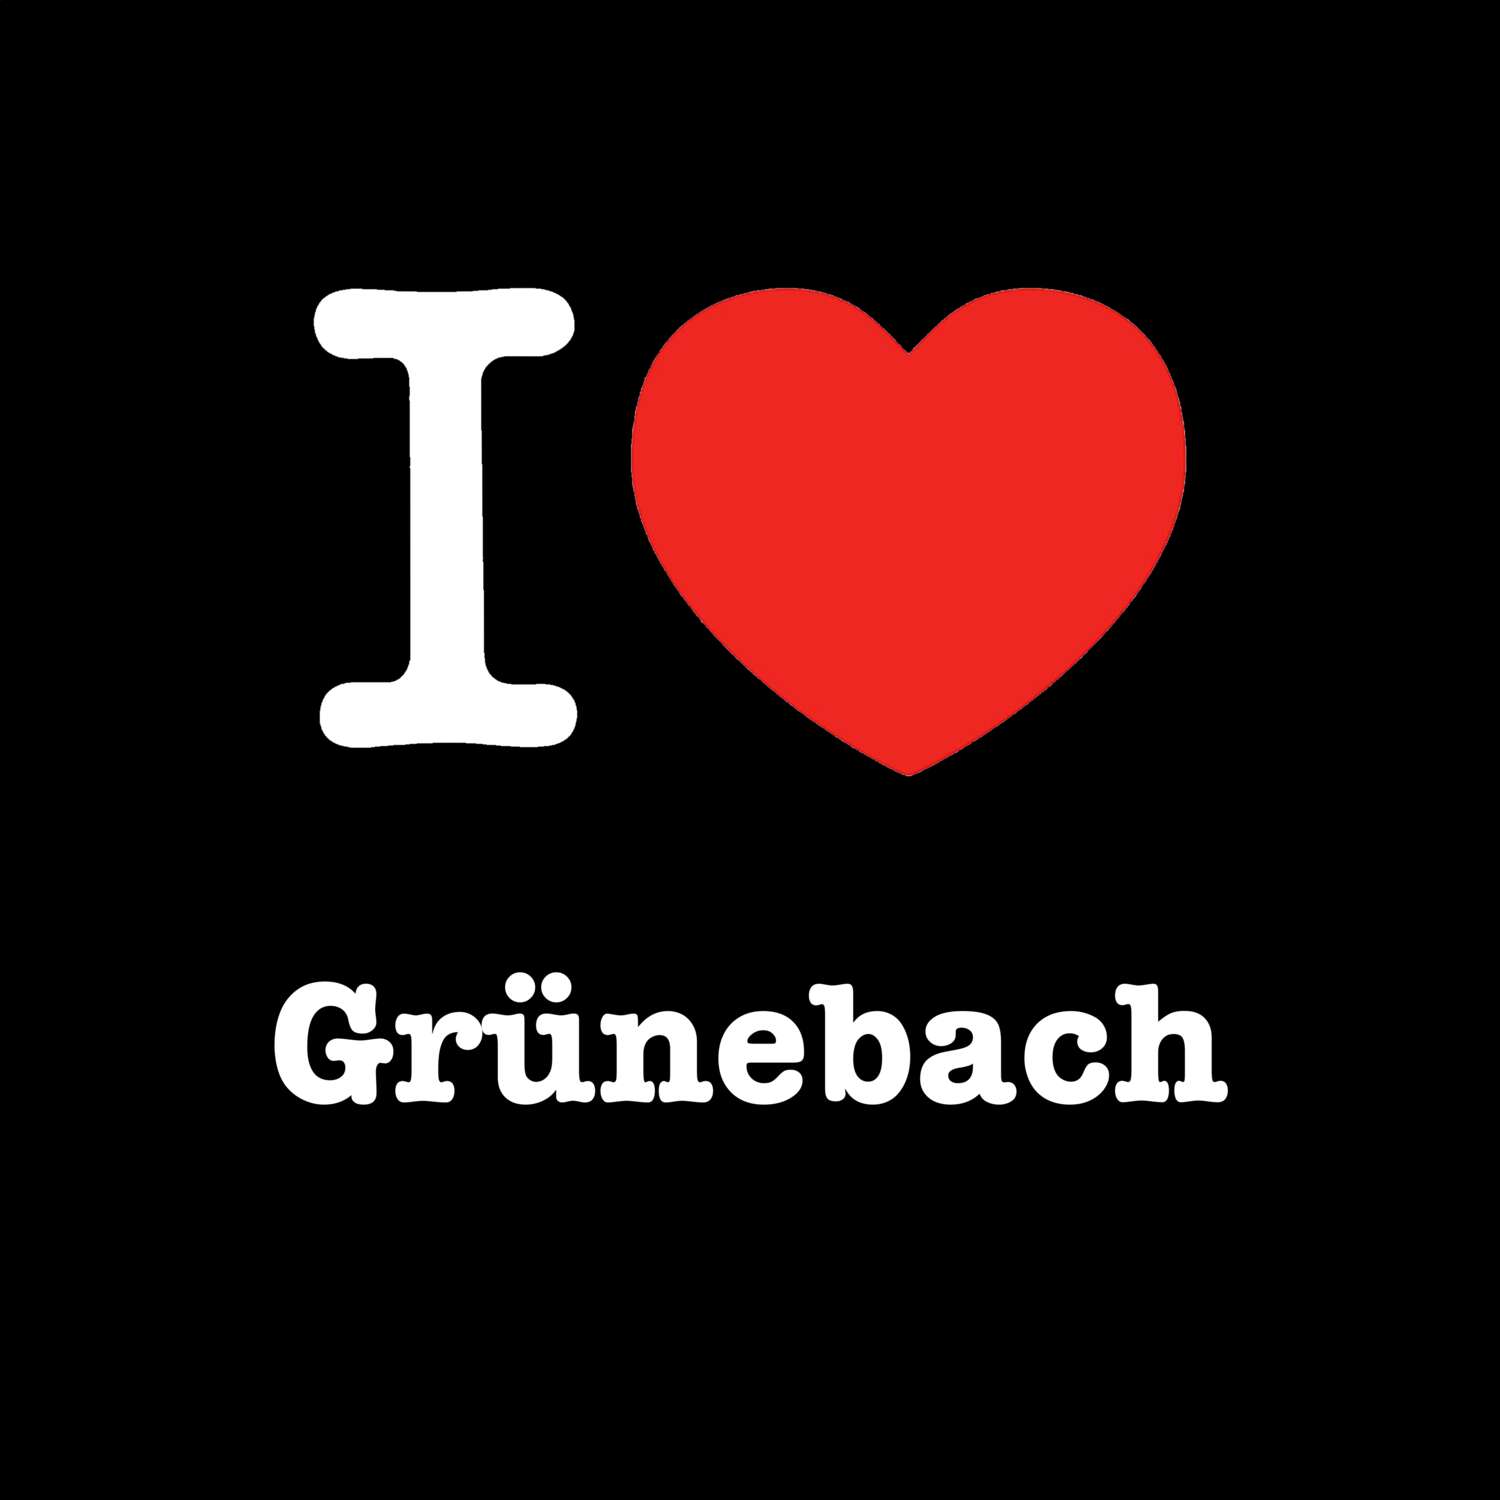 Grünebach T-Shirt »I love«